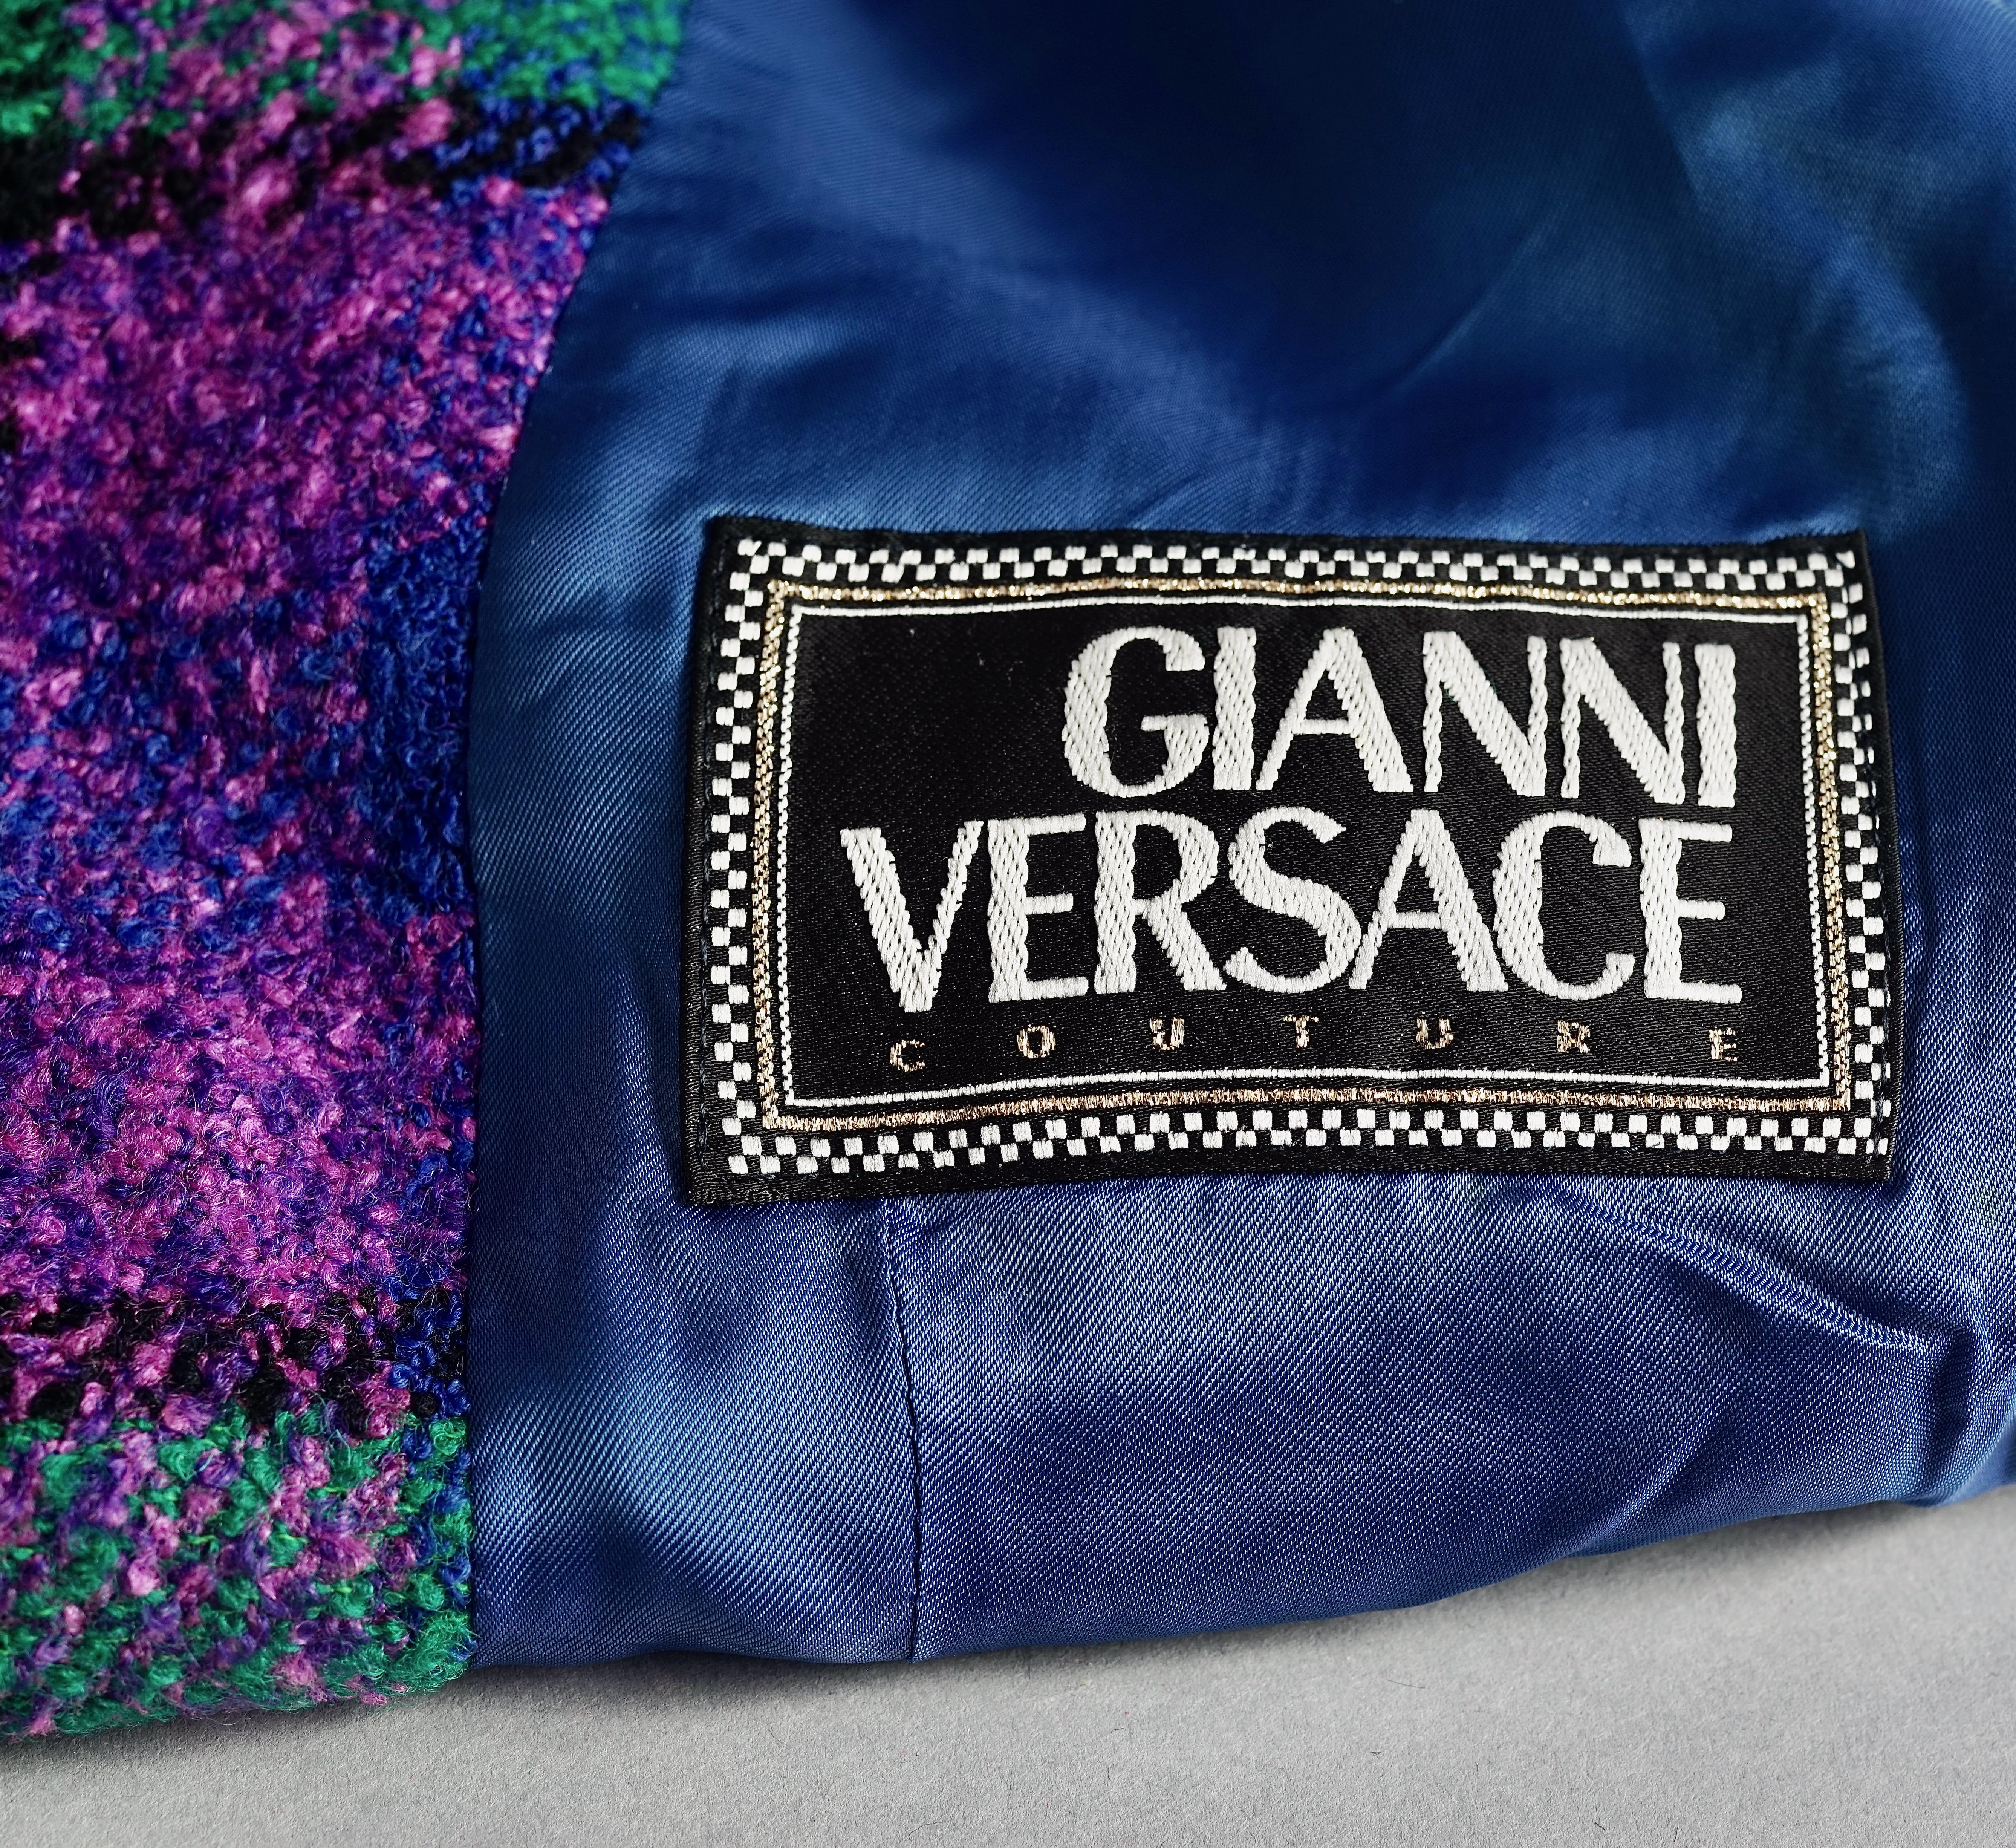 Vintage 1991 A/W GIANNI VERSACE Couture Plaid Tartan Jacket Skirt Suit 1